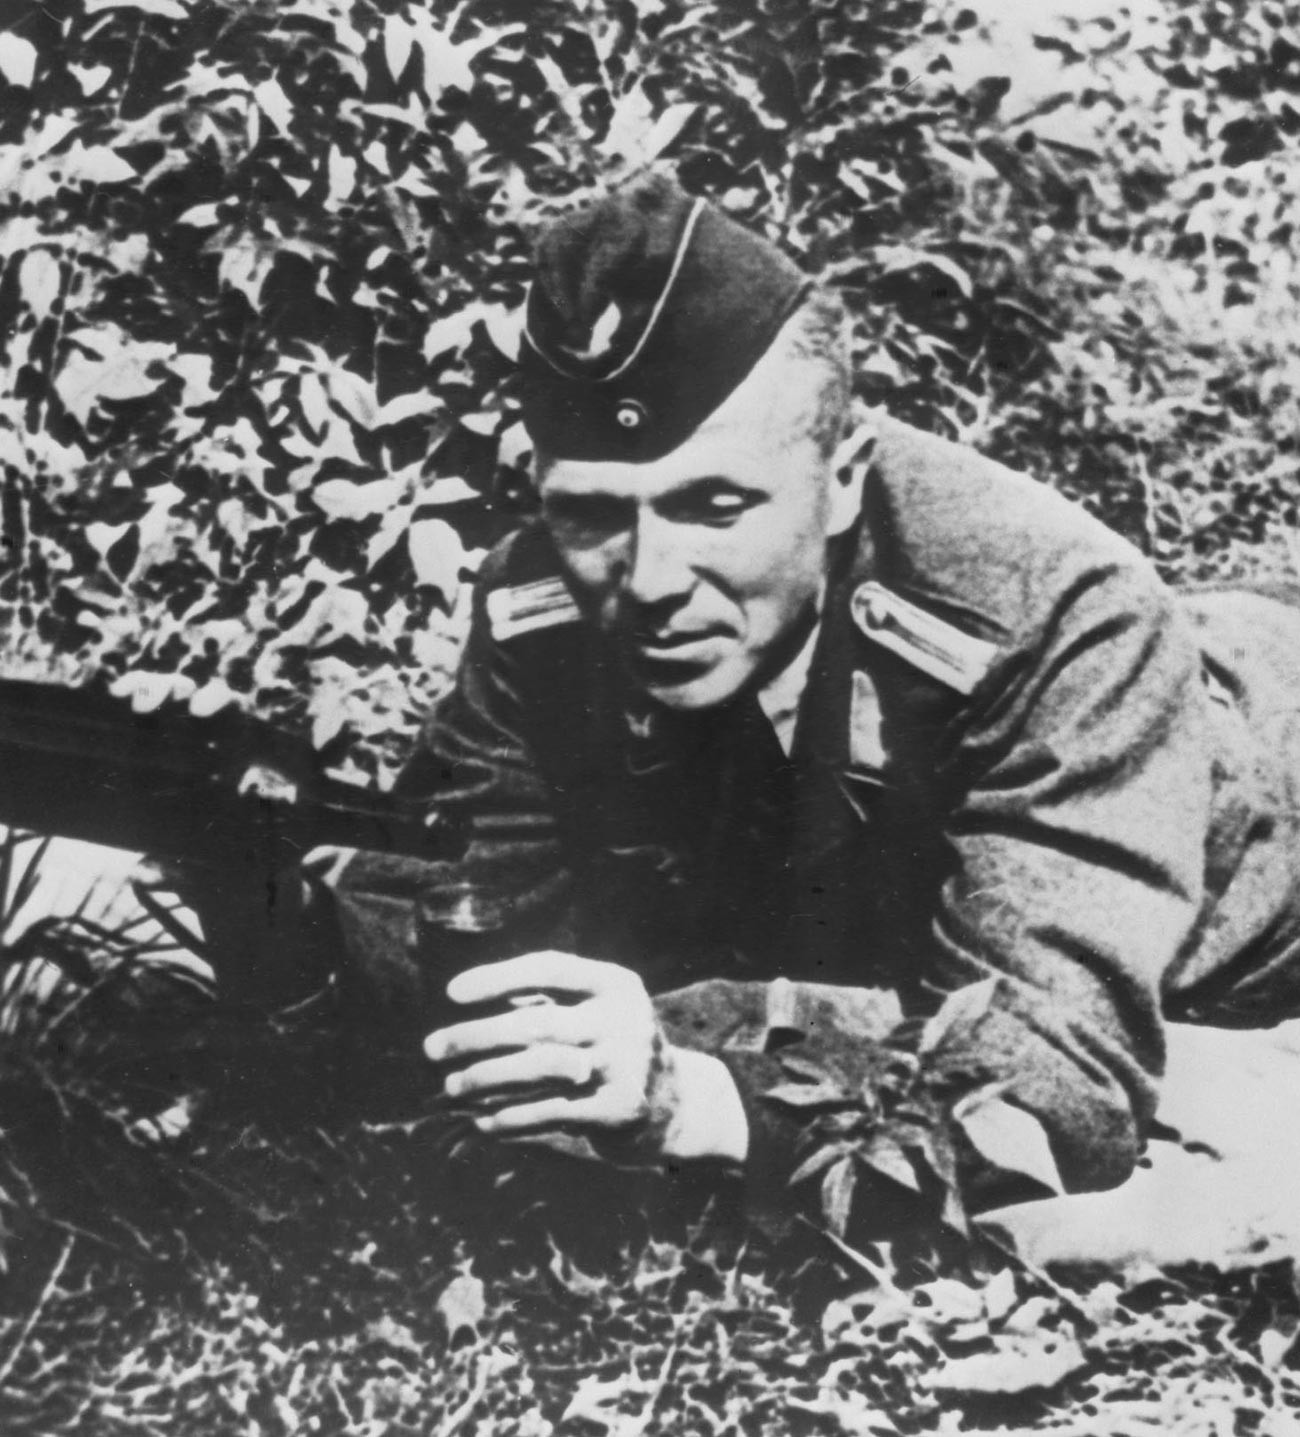 Der sowjetische Geheimdienstoffizier Nikolai Kusnezow, der Kommandant der Partisanenabteilung, in der Uniform eines deutschen Offiziers.